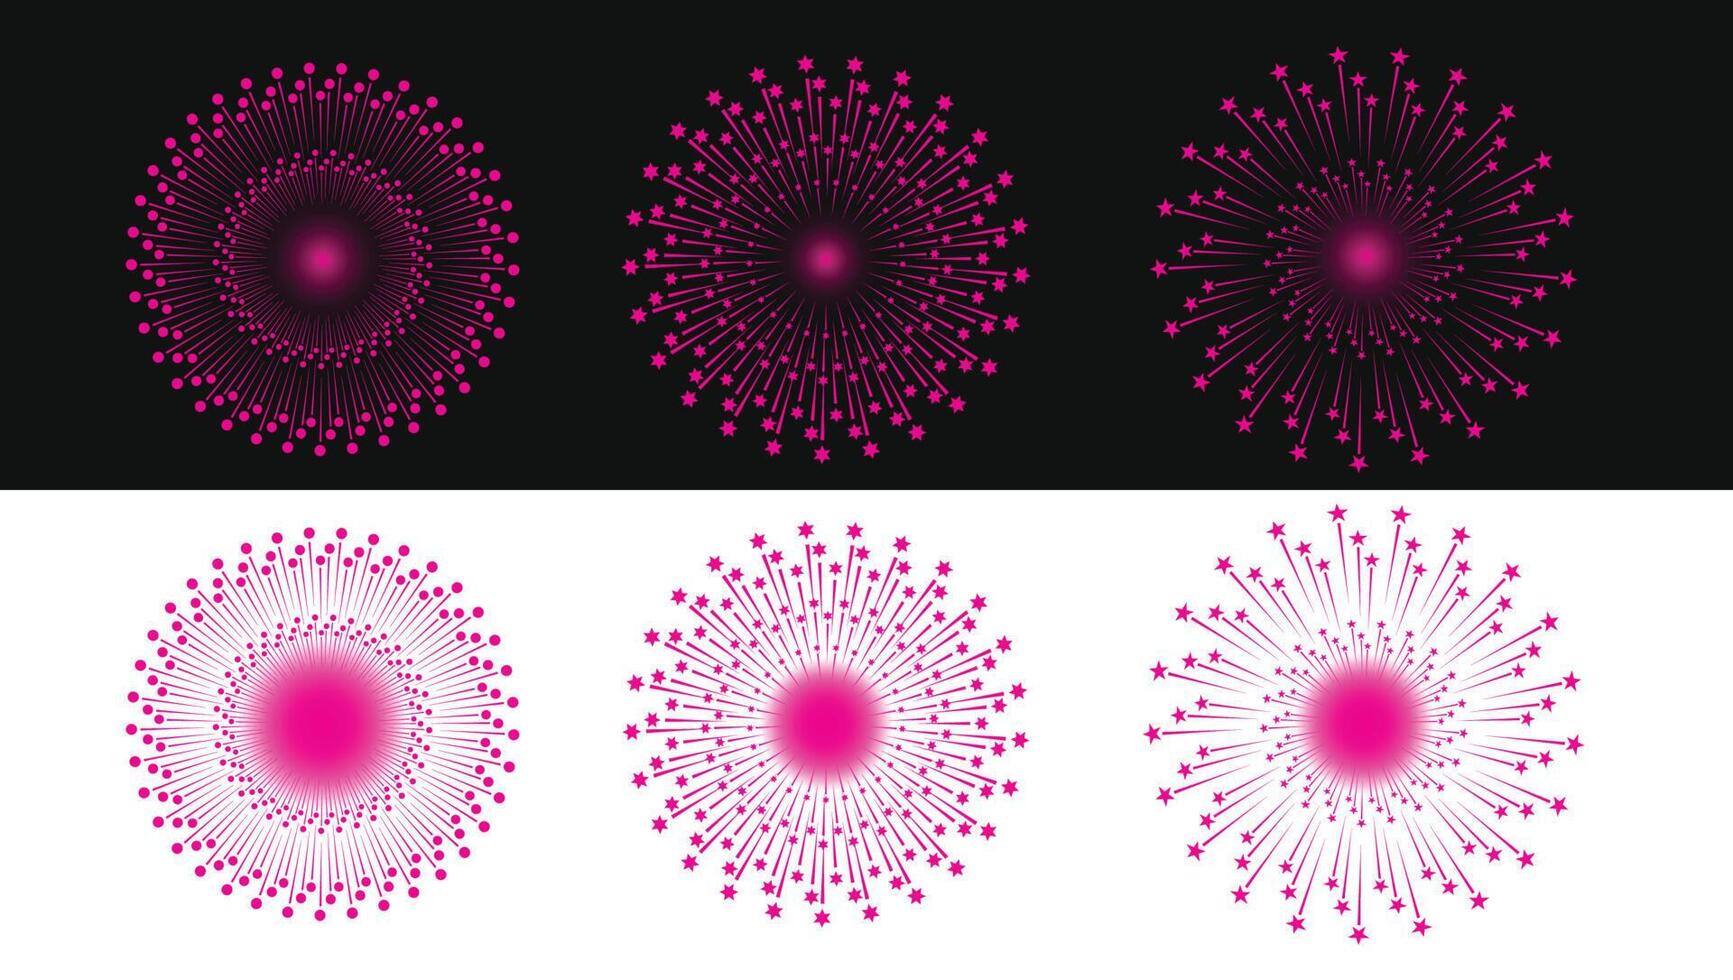 Fireworks Celebration Design Elements for making lighting designs vectors  illustrations 2